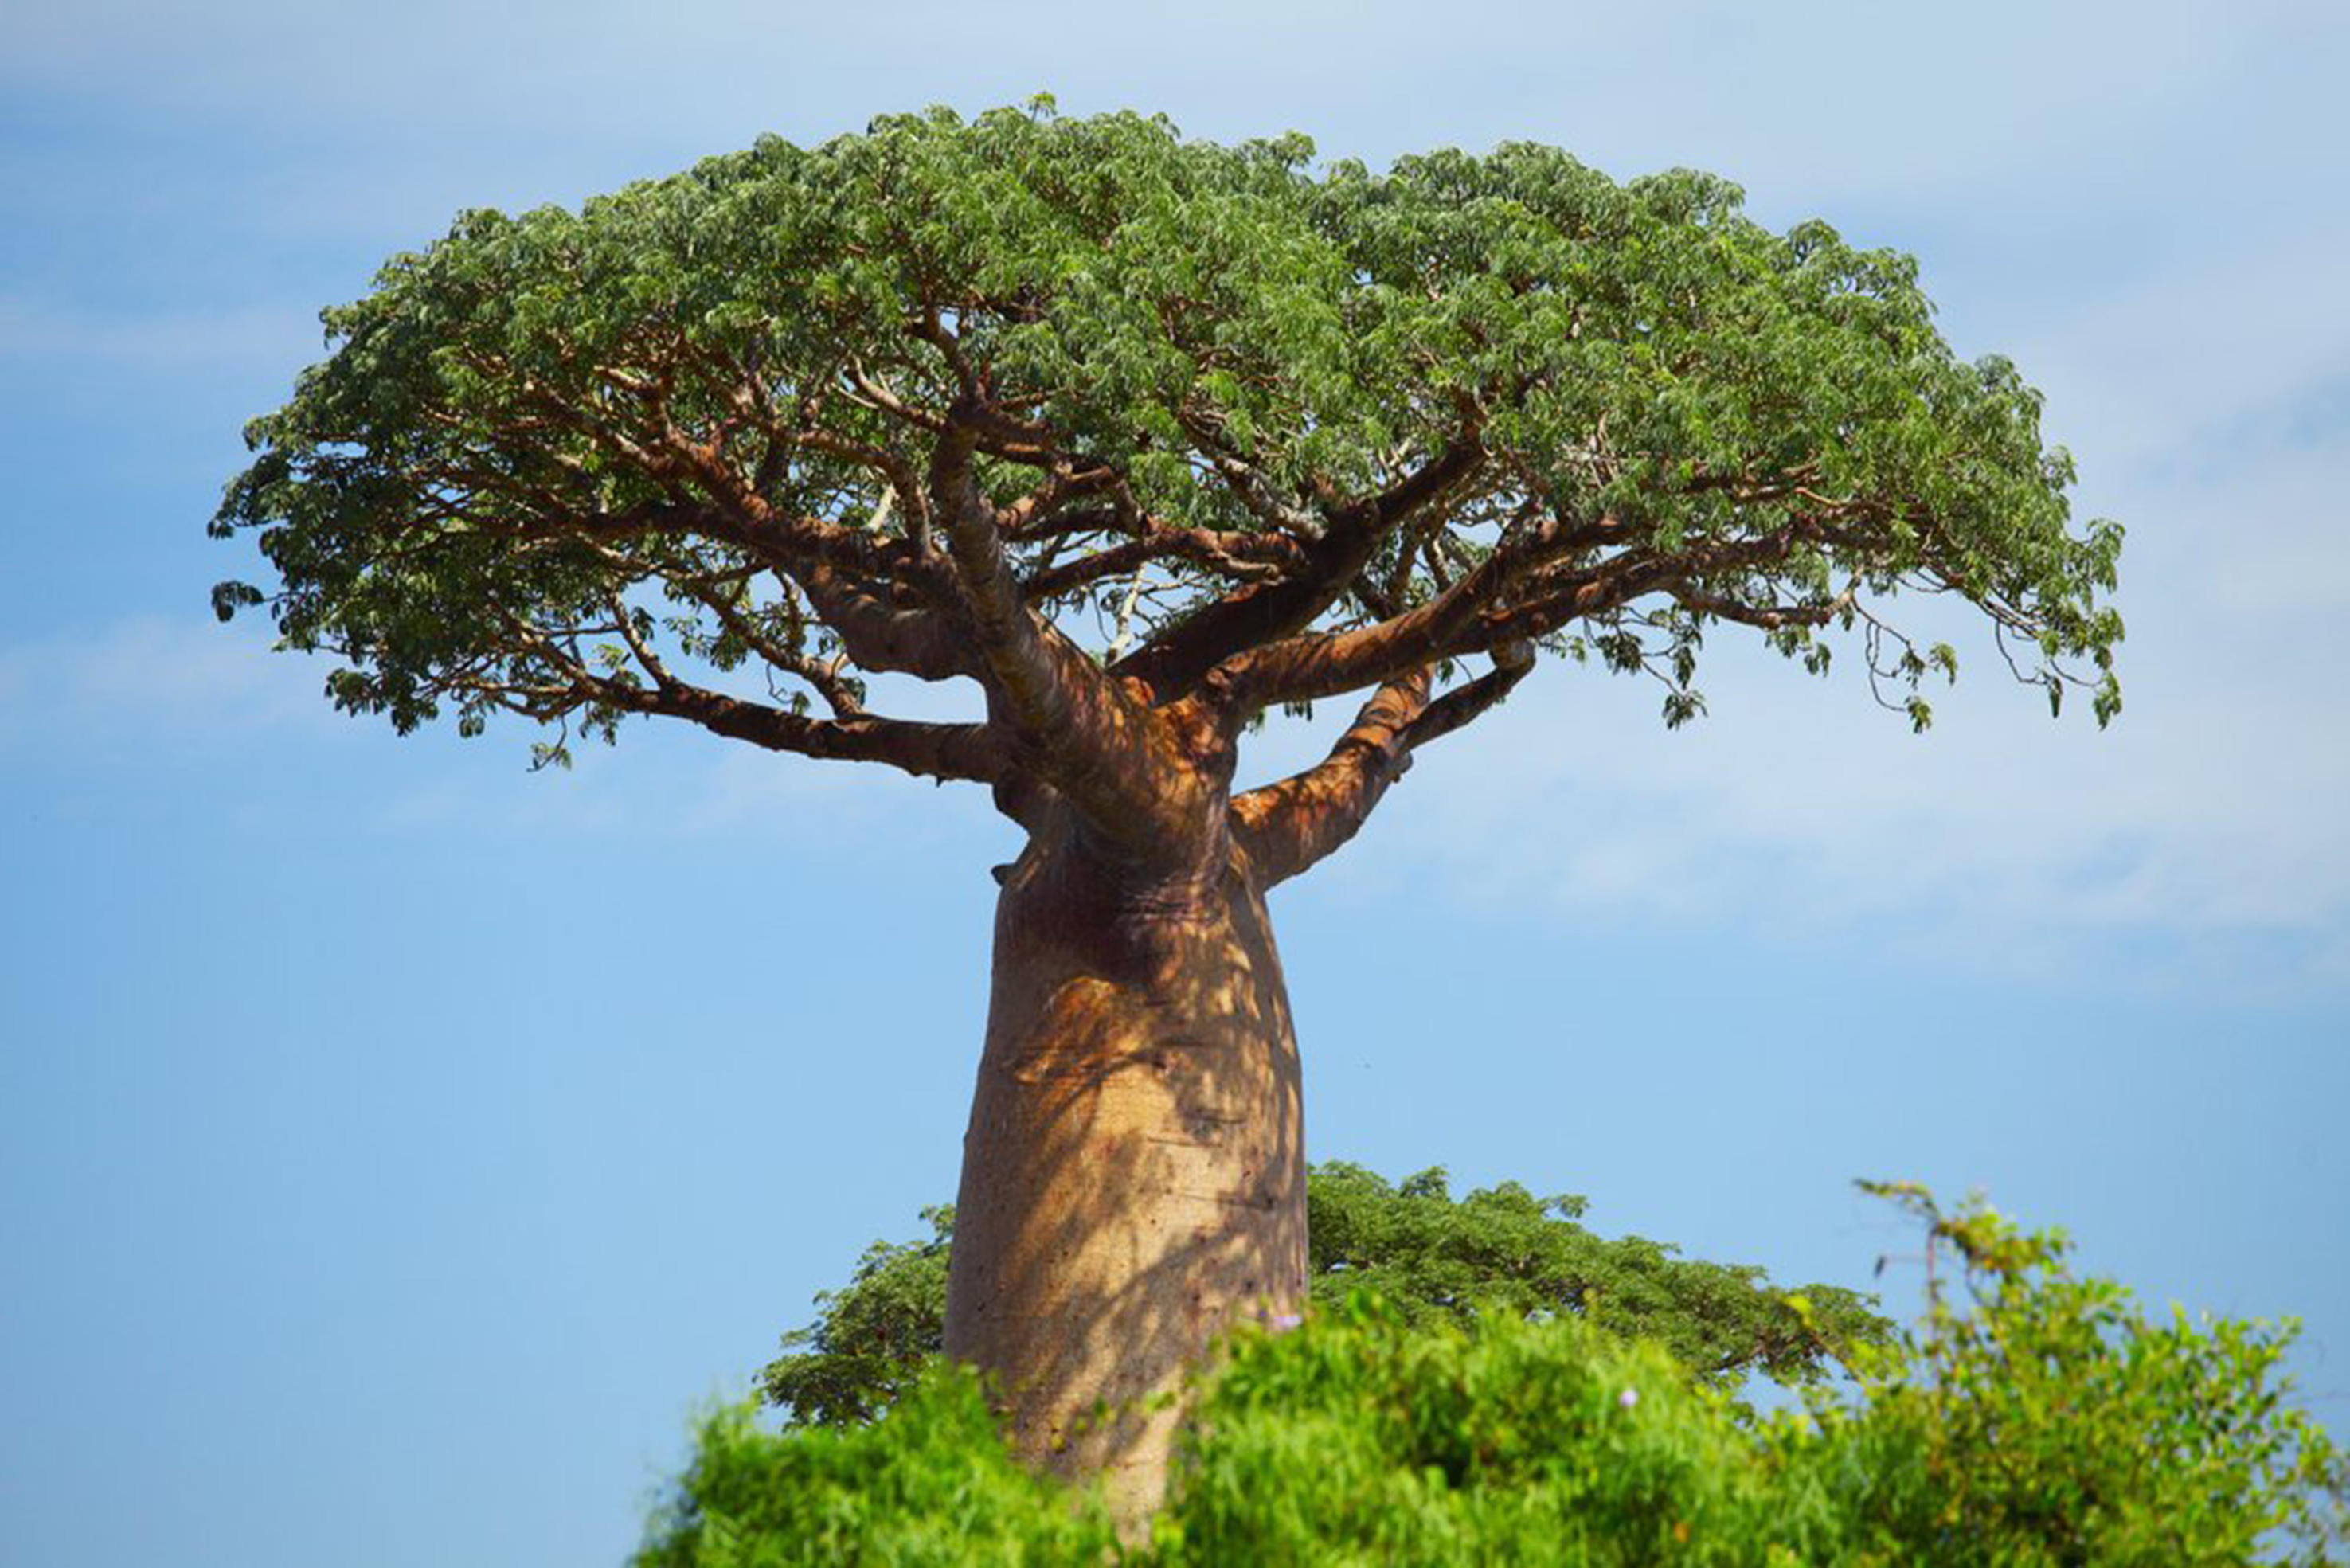 其它 正文  旅人树是植物界的老寿星之一,即使在热带草原那种干旱的